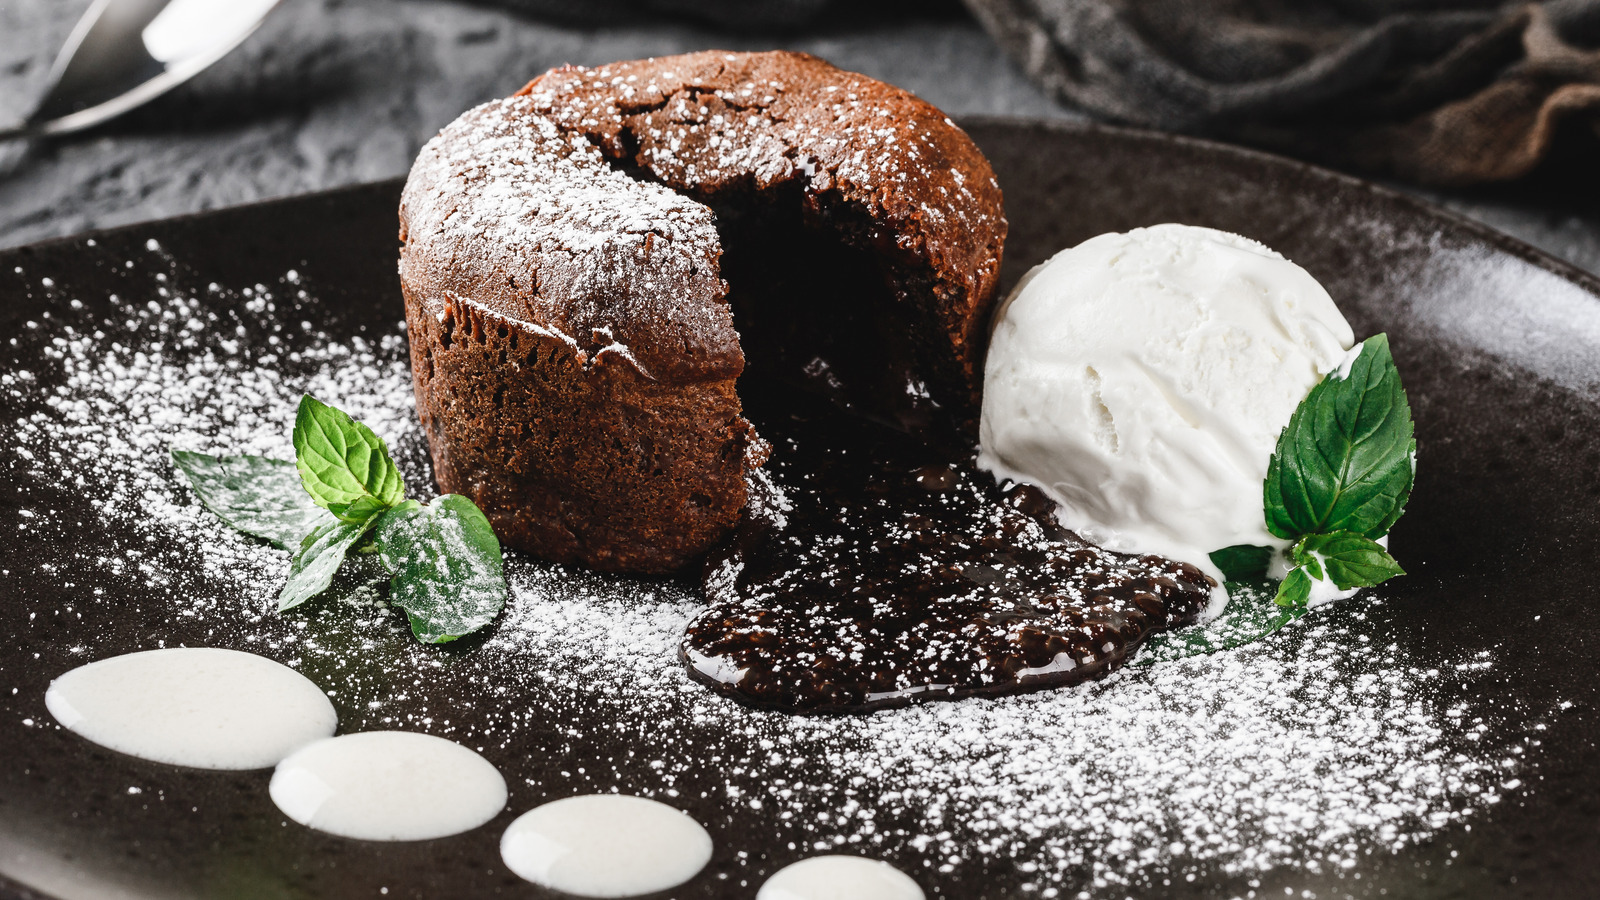 Classic Chocolate Vanilla Ice Cream Cake – Eat, Live, Run